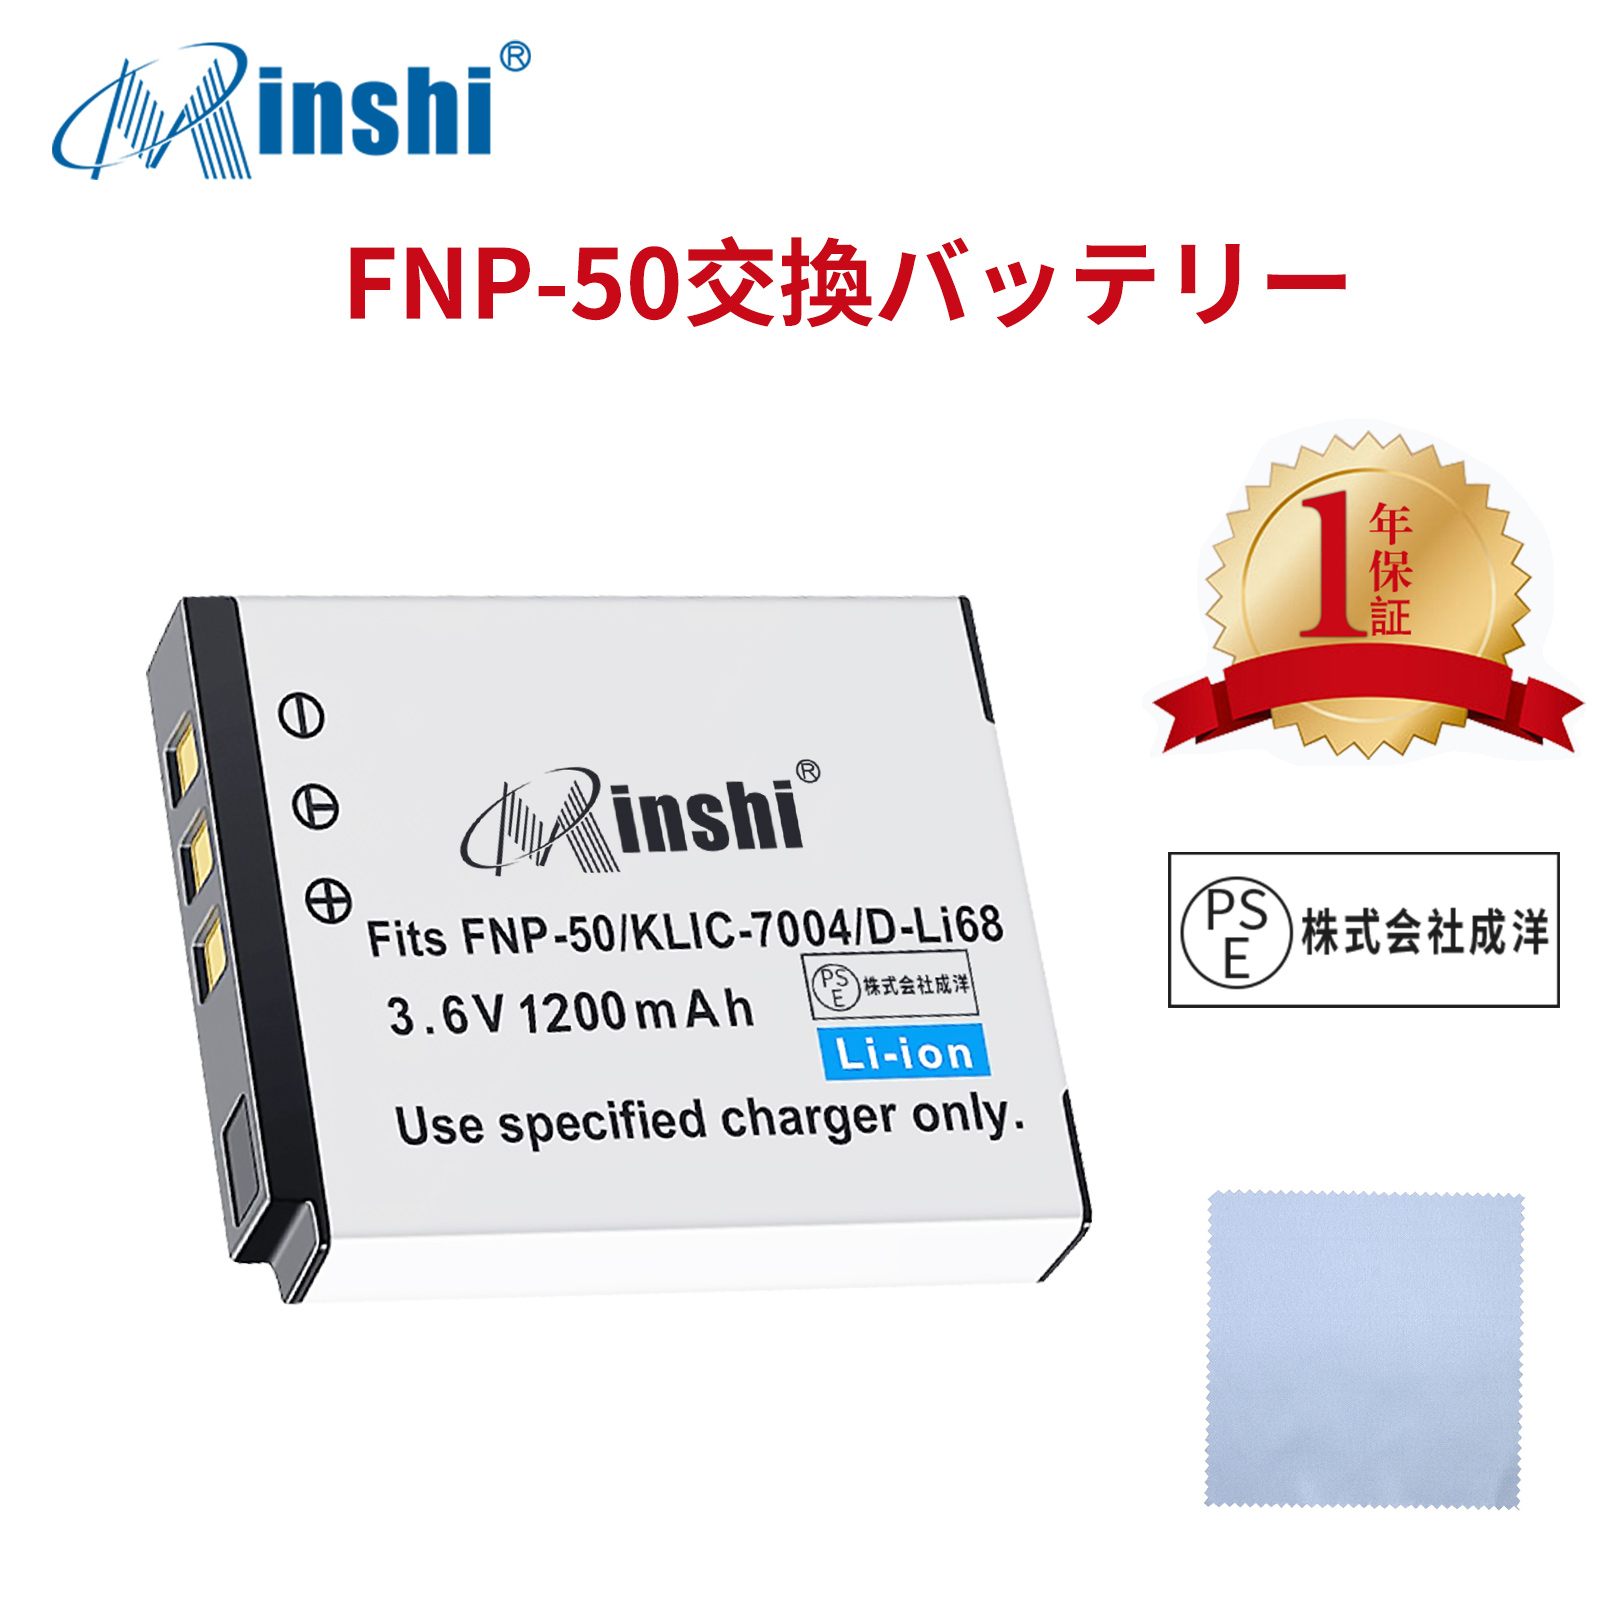 【清潔布ー付】minshi EasyShare V1253  【1200mAh 3.6V】PSE認定済 高品質 PENTAX D-LI68 交換用バッテリー